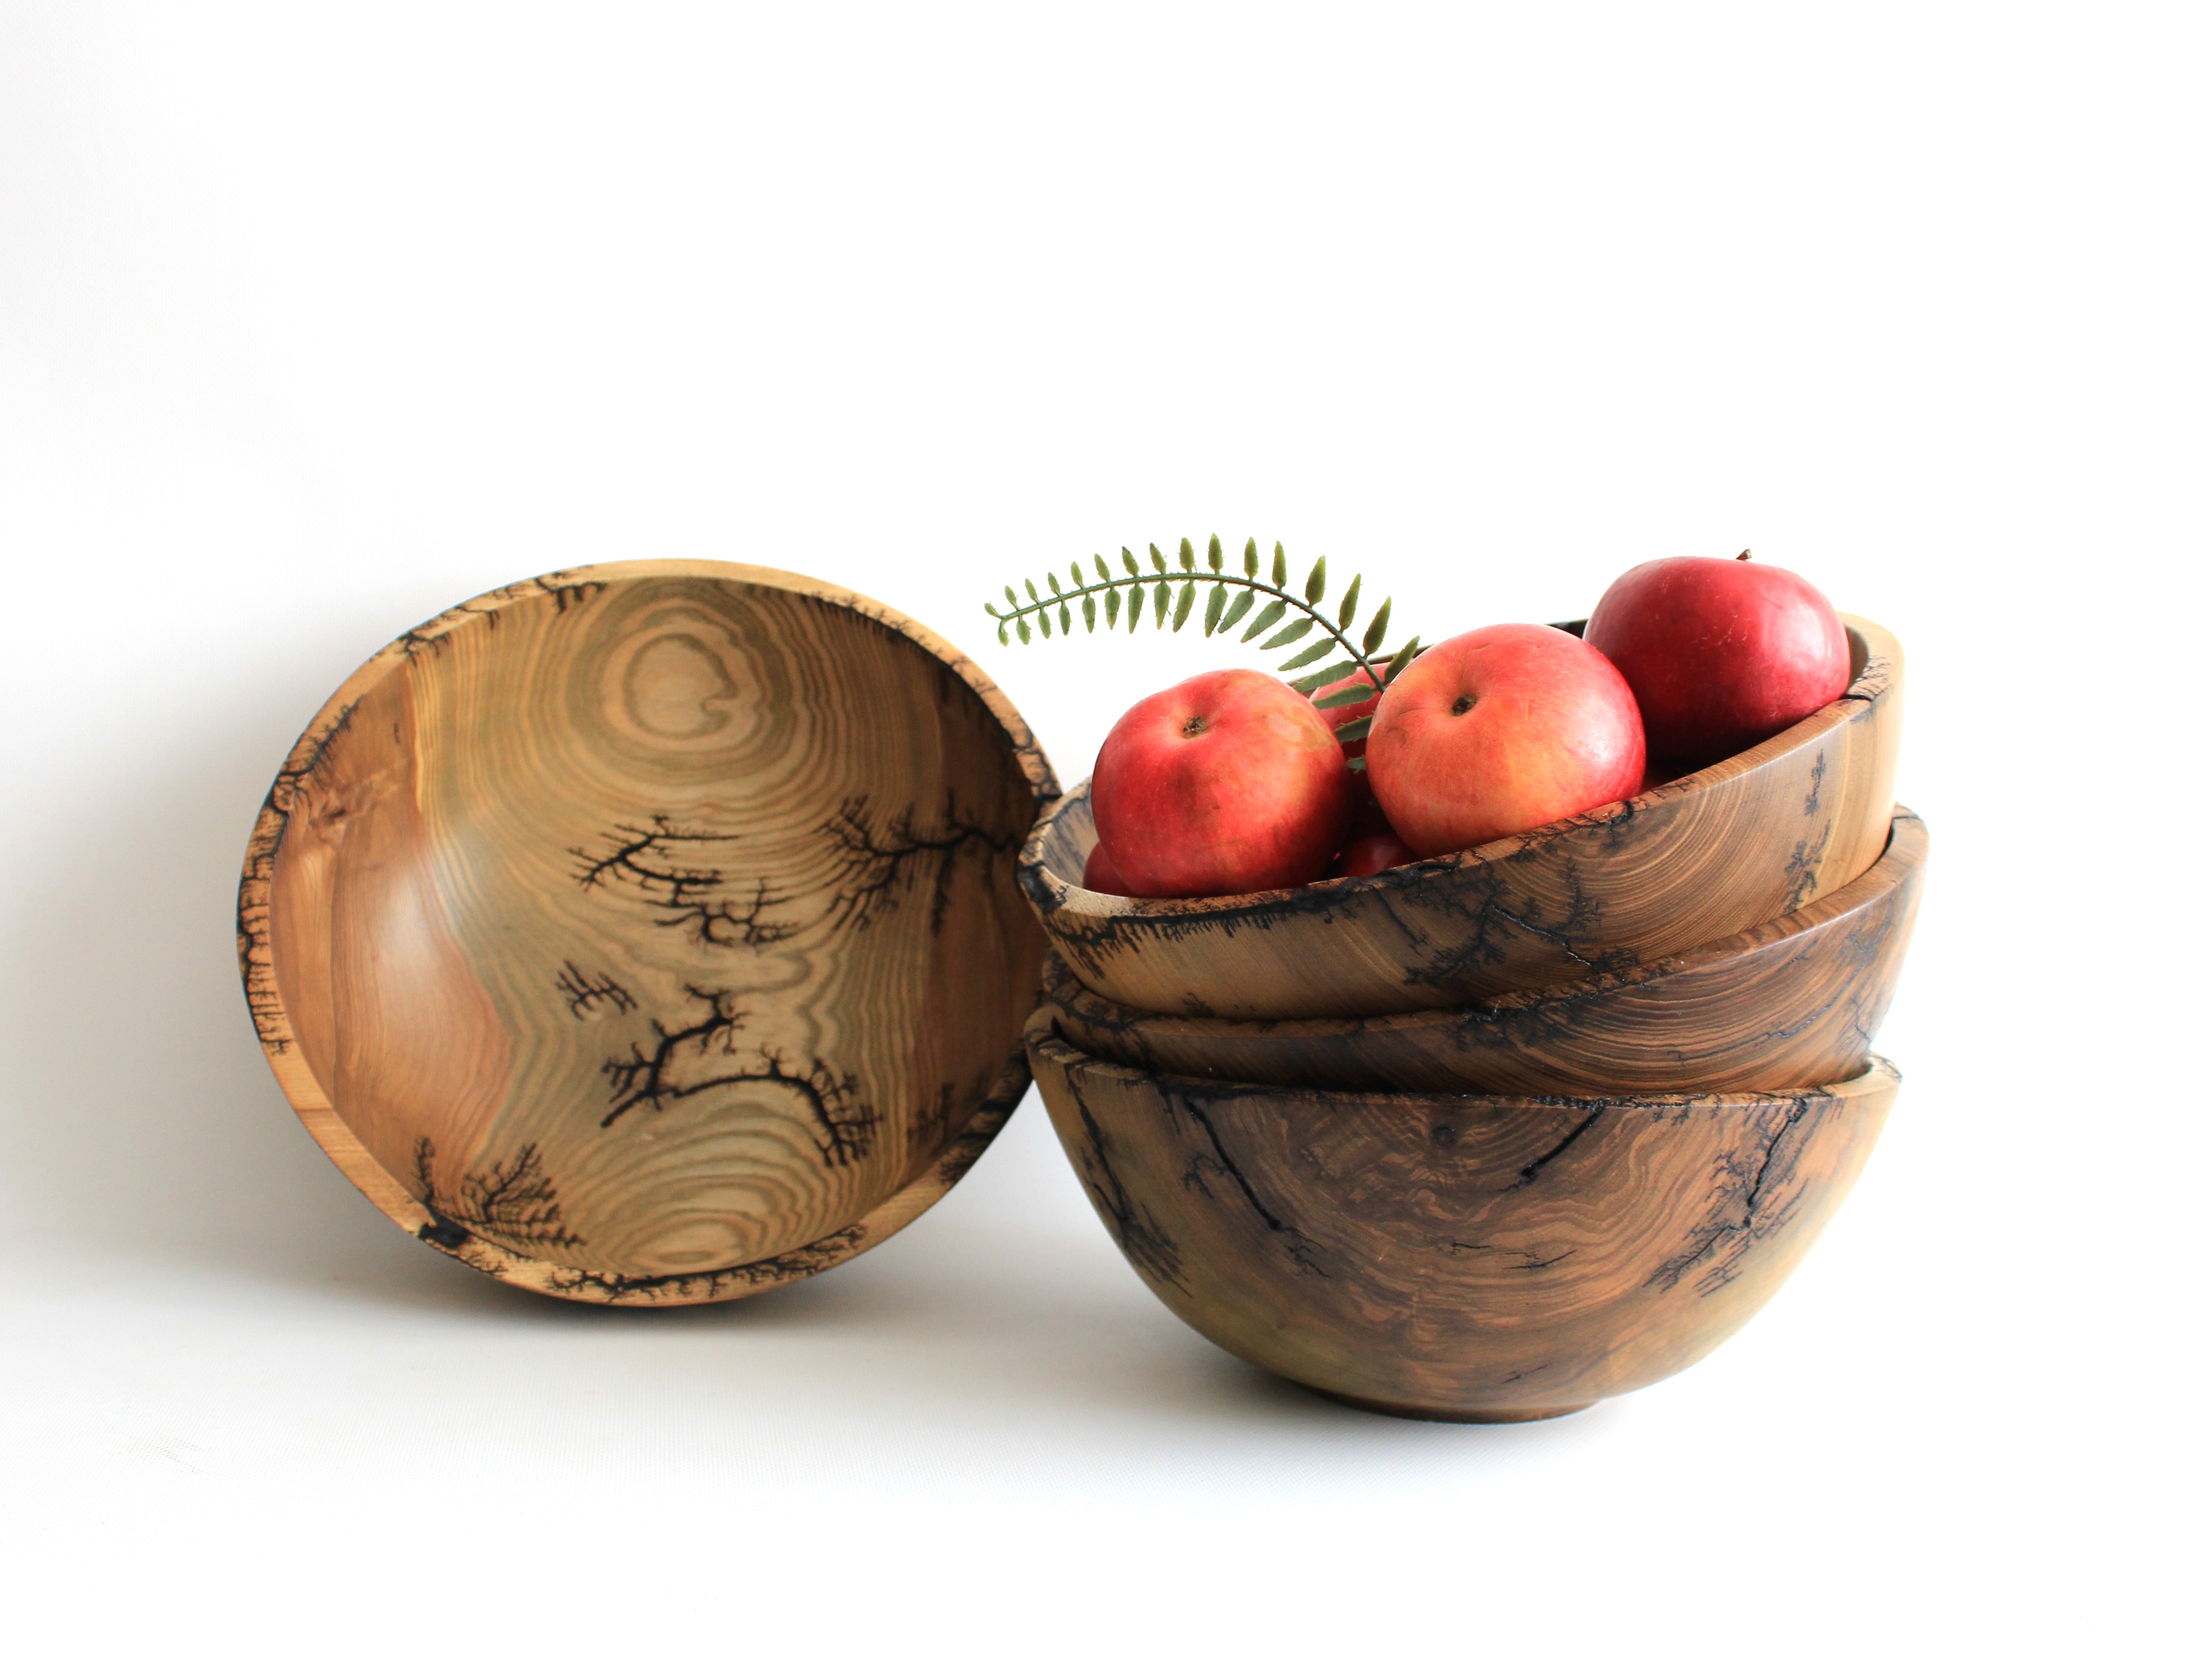 Wooden bowls for salad, fractal wood burning handmade